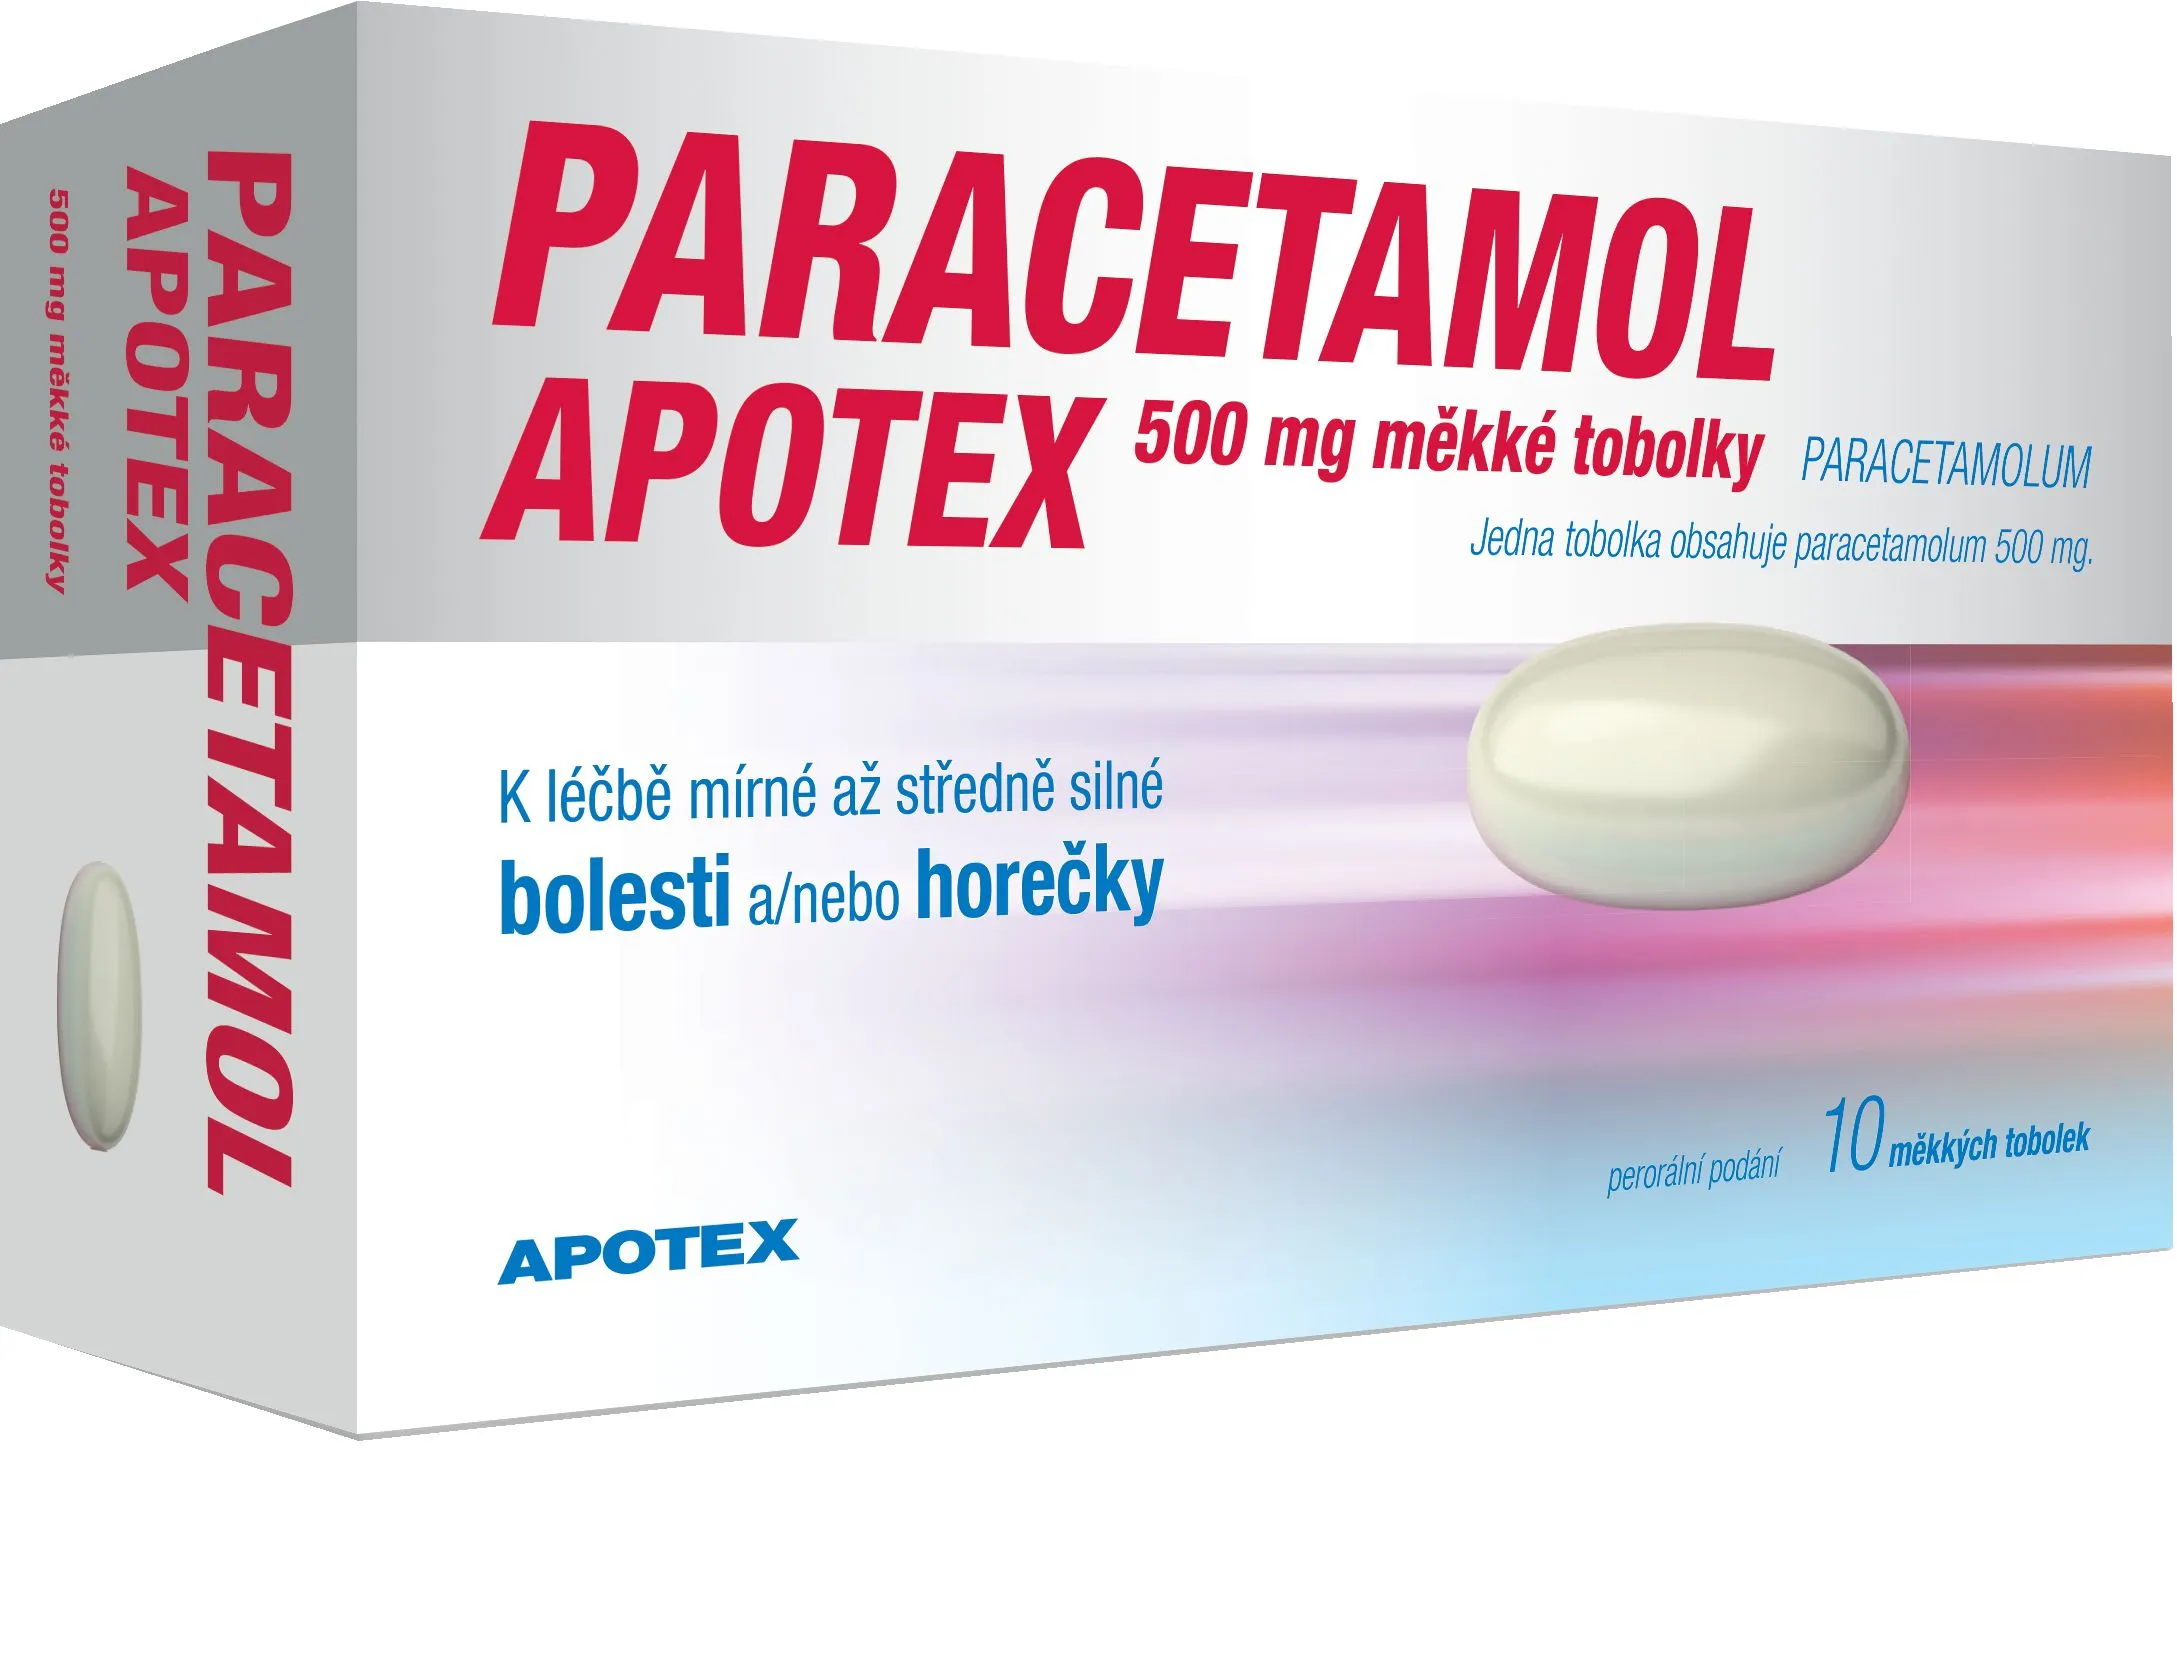 Paracetamol Apotex 500 mg 10 tobolek